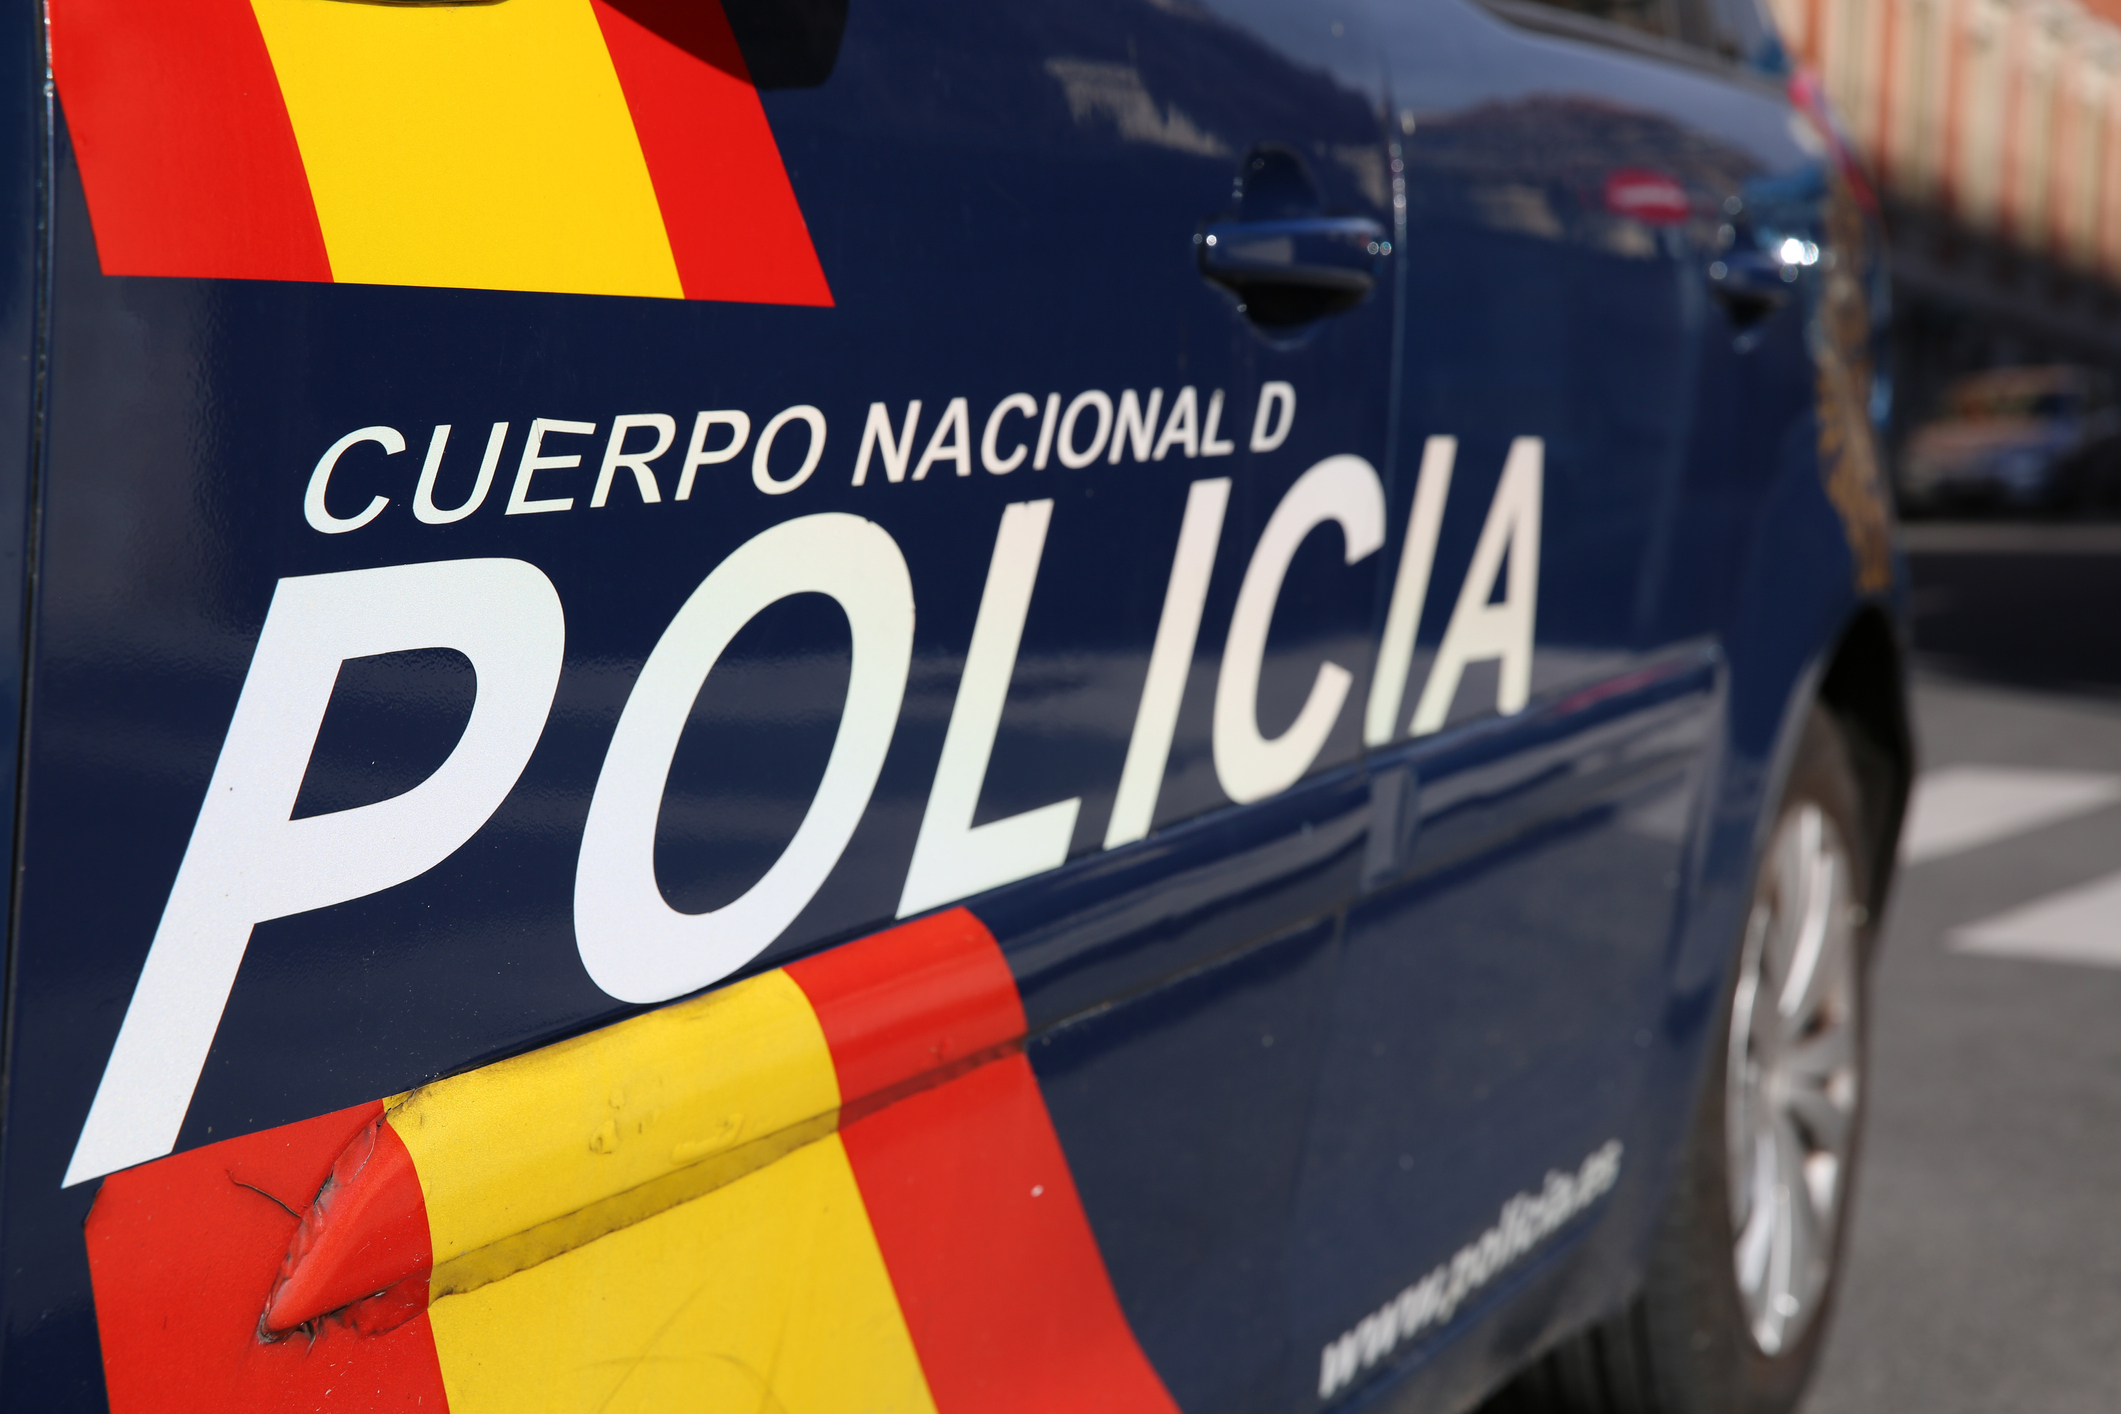 Trois personnes arrêtées en Espagne pour menaces contre la France